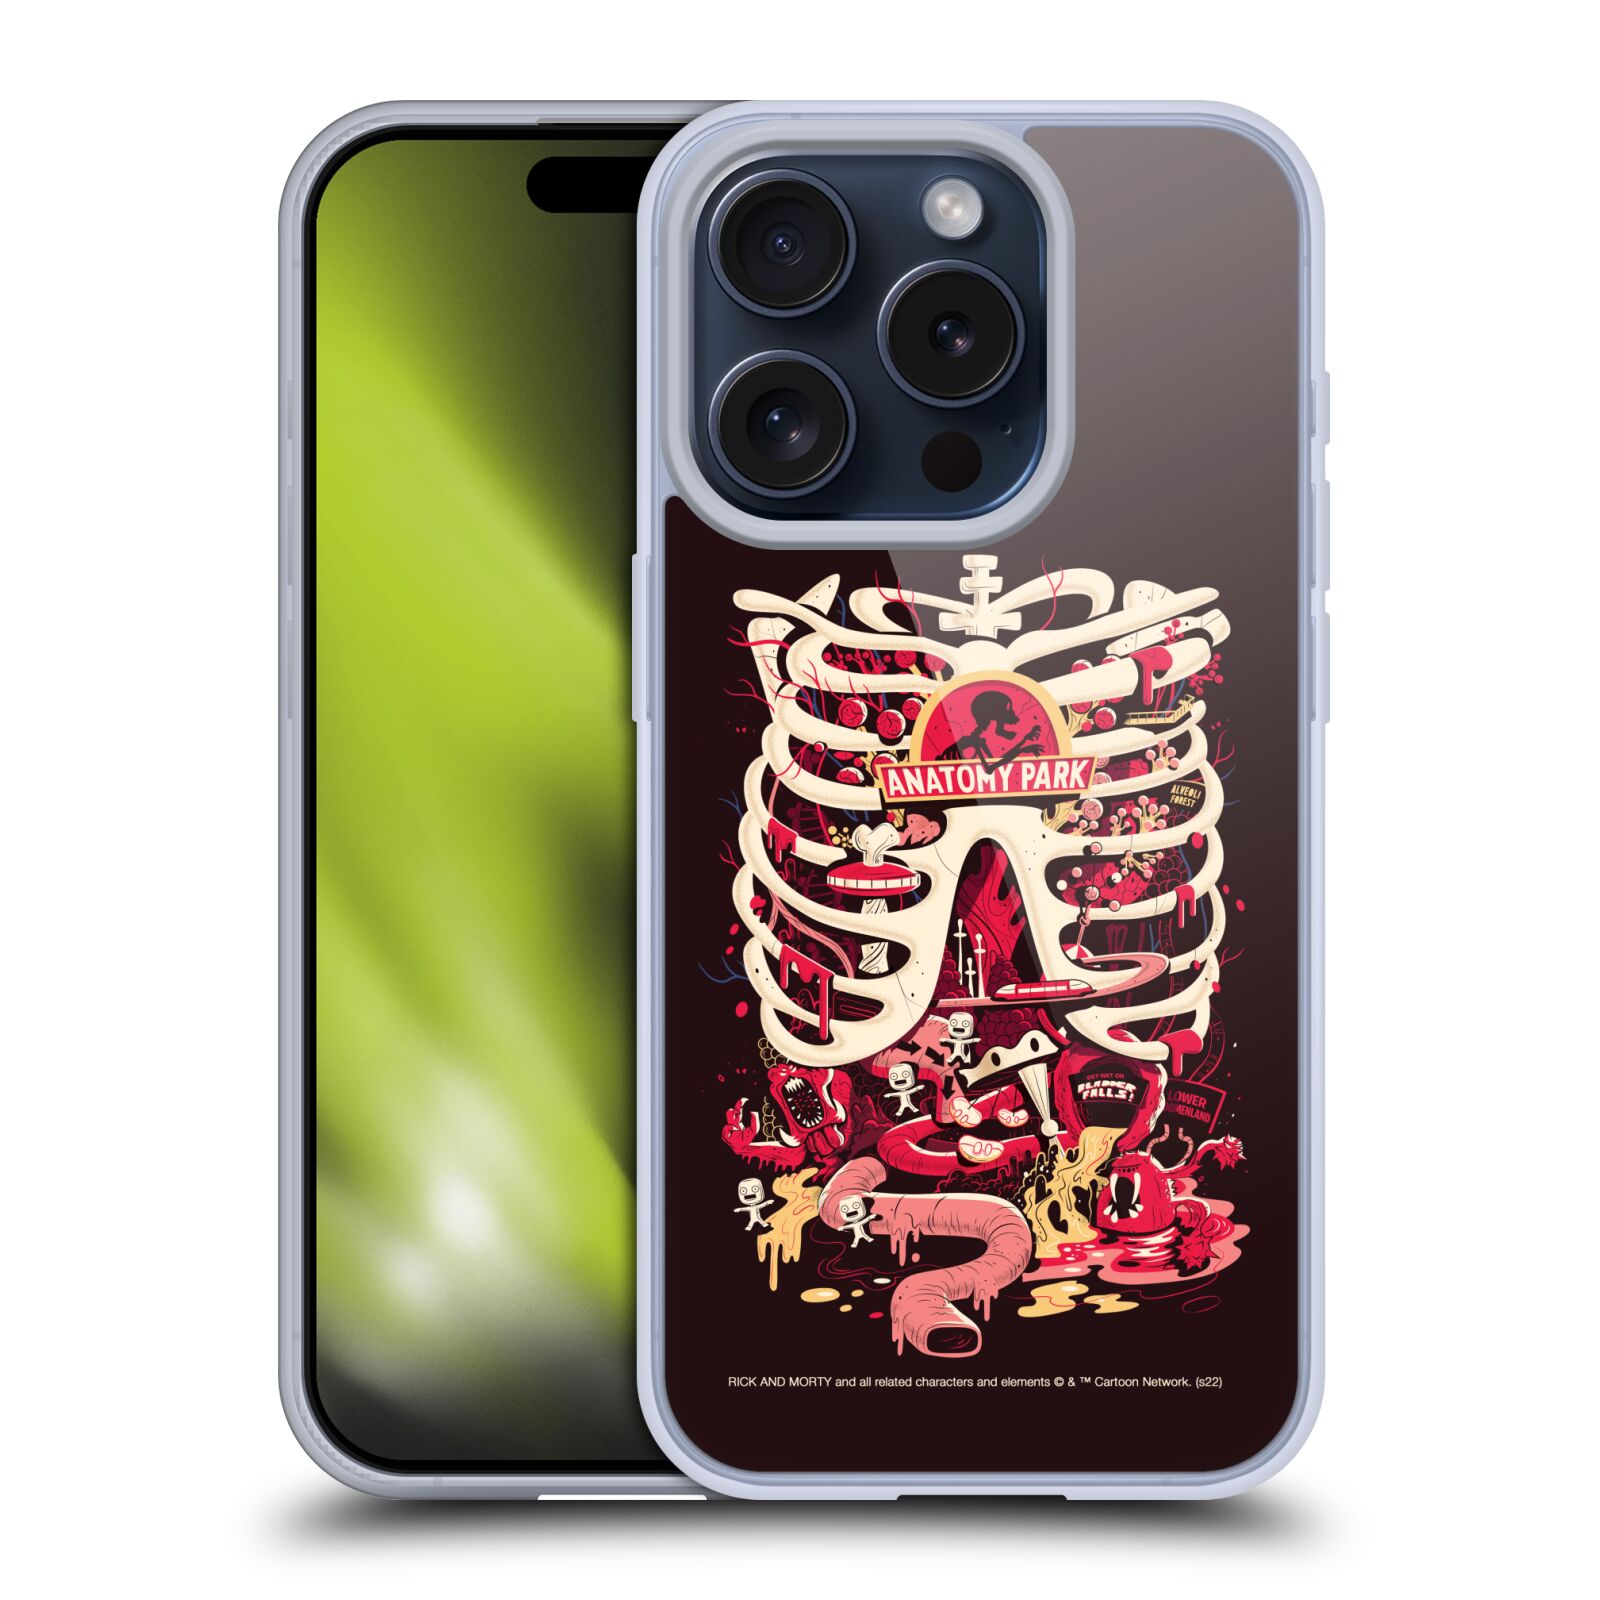 Silikonové lesklé pouzdro na mobil Apple iPhone 15 Pro - Rick And Morty - Anatomy Park (Silikonový lesklý kryt, obal, pouzdro na mobilní telefon Apple iPhone 15 Pro s licencovaným motivem Rick And Morty - Anatomy Park)